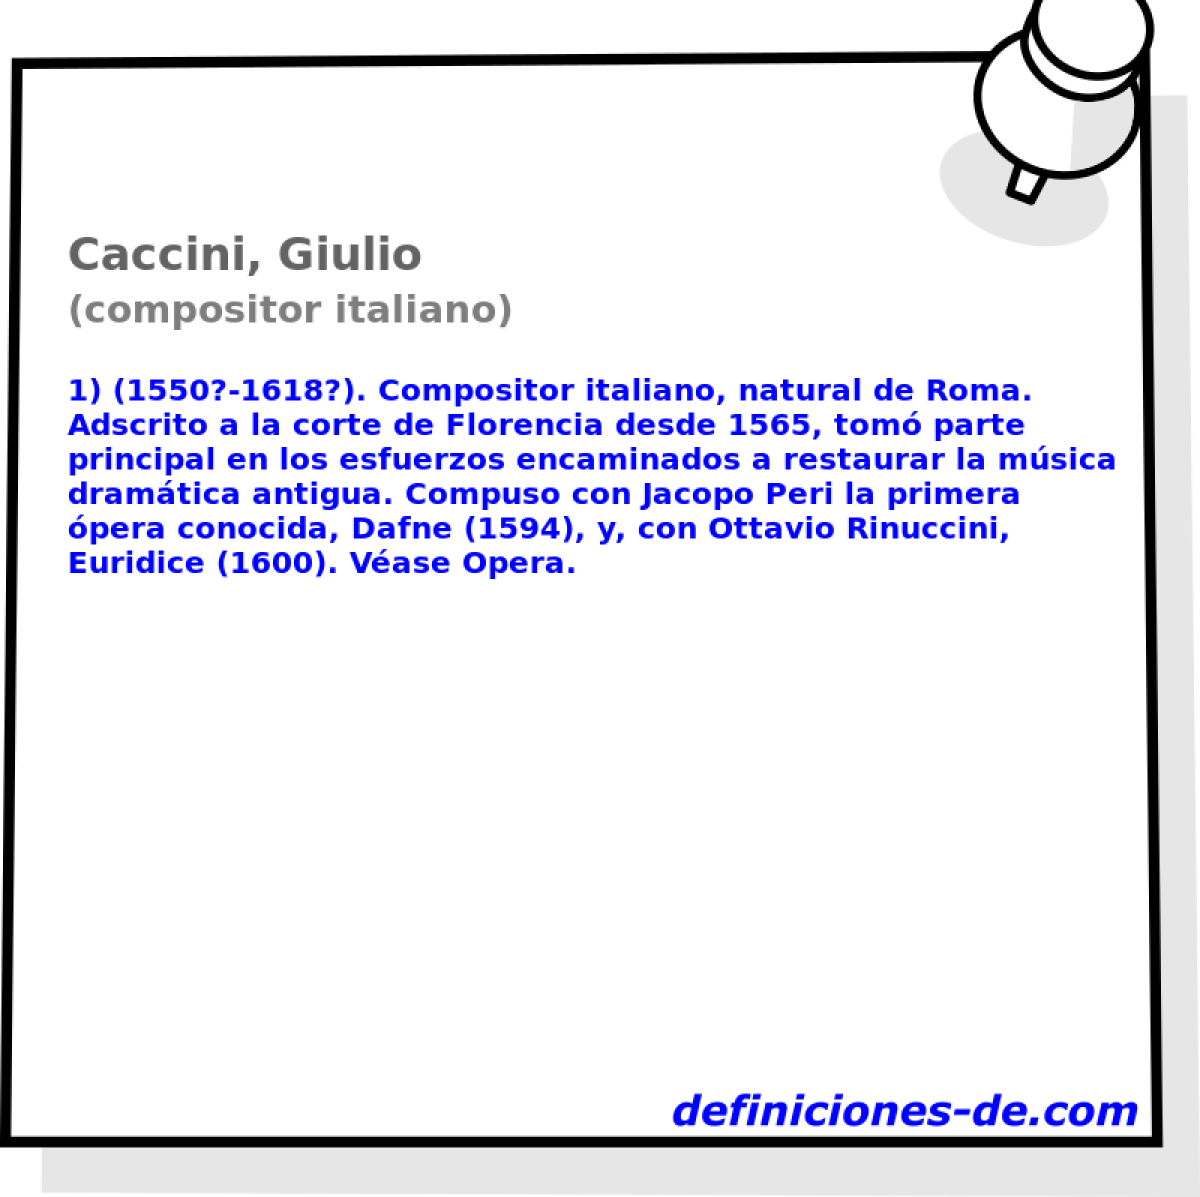 Caccini, Giulio (compositor italiano)